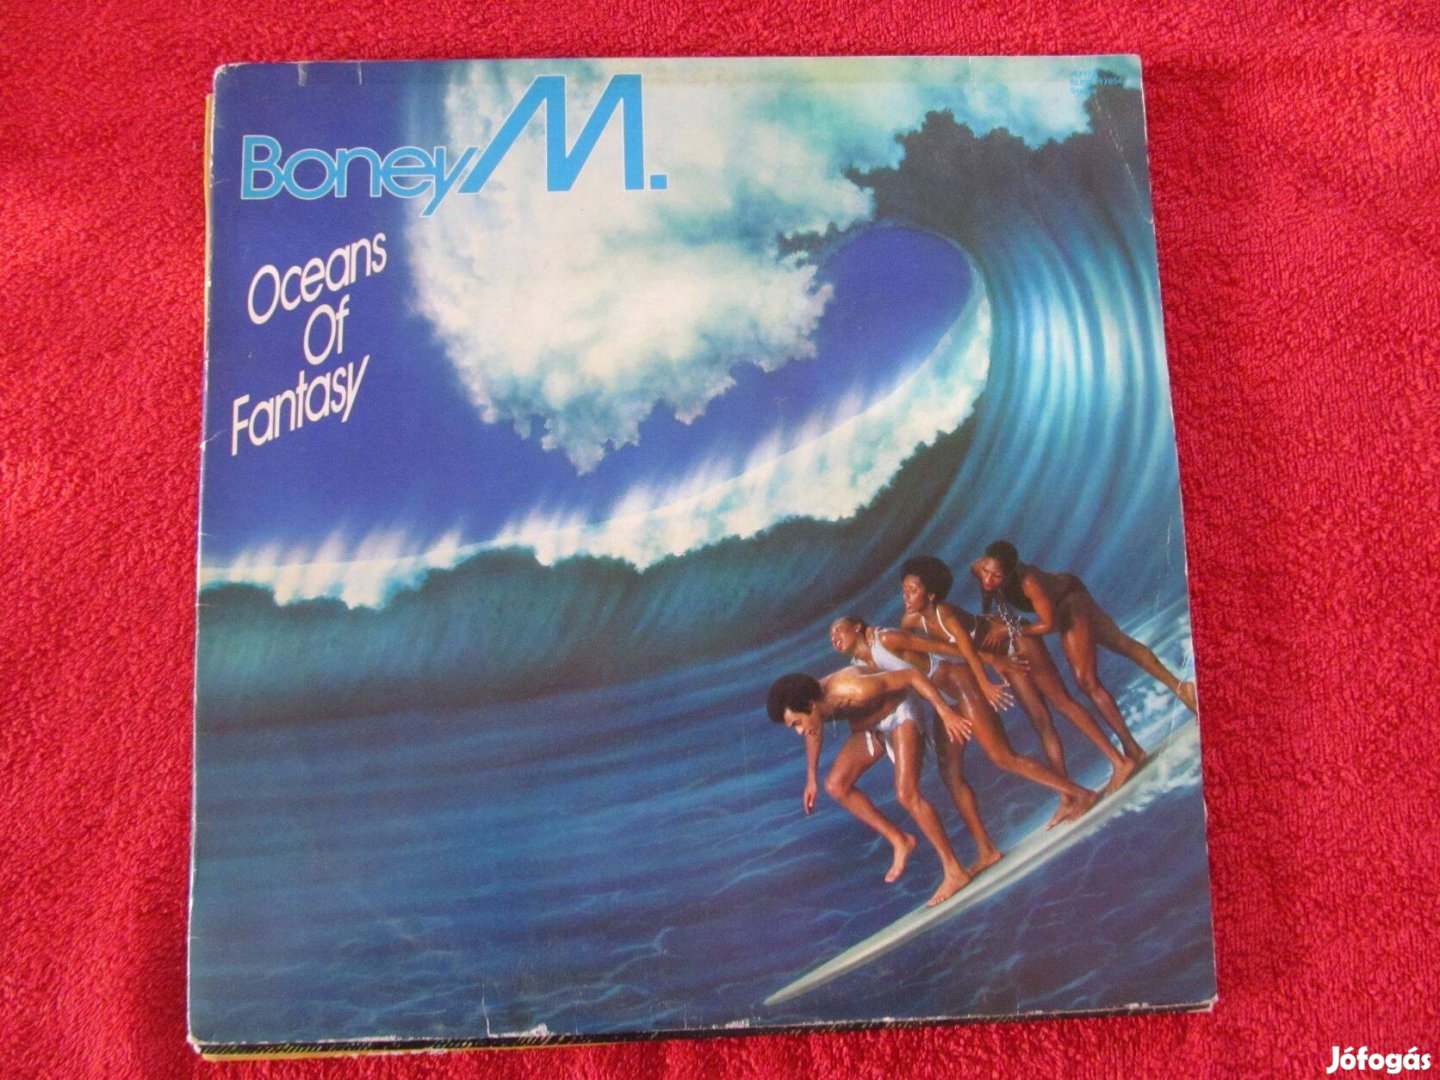 Boney M Oceans of Fantasy LP, bakelit